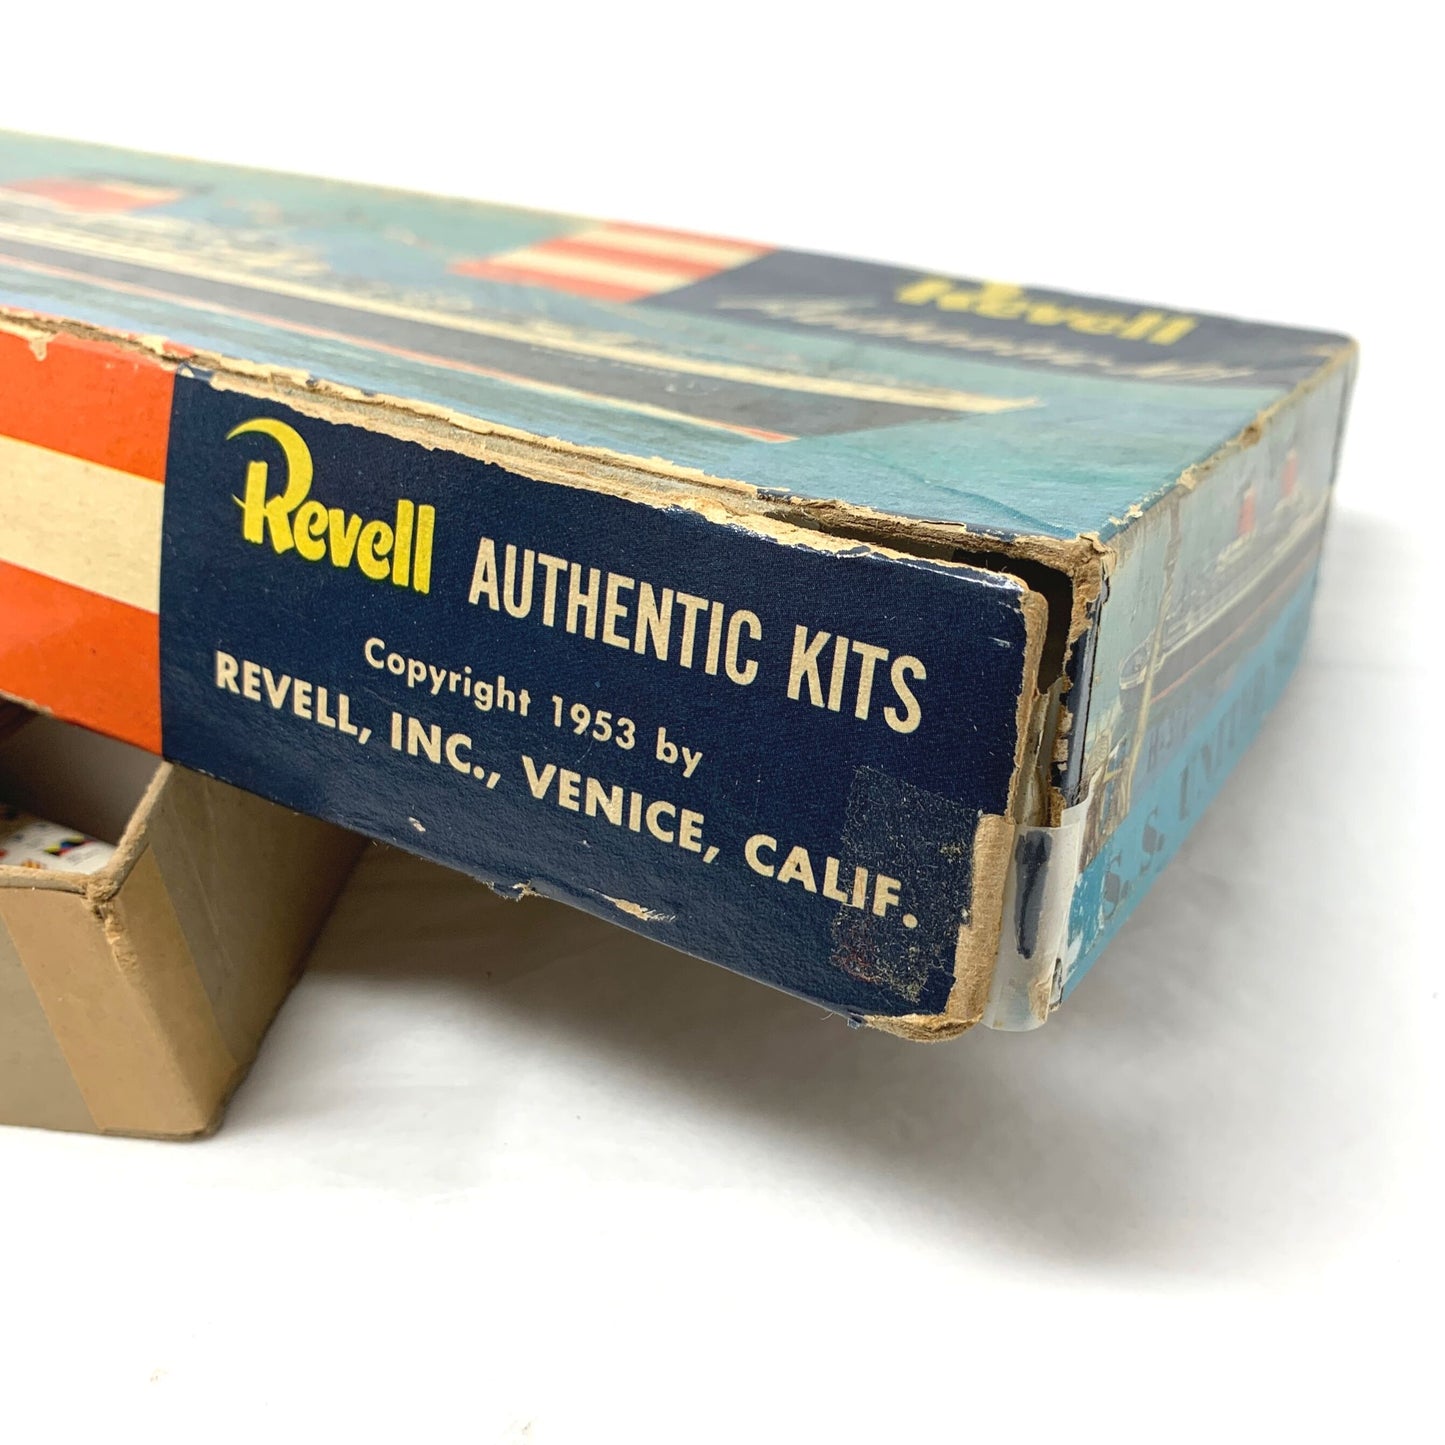 Revell S.S. United States Plastic Model Kit H-312:198, Open Box